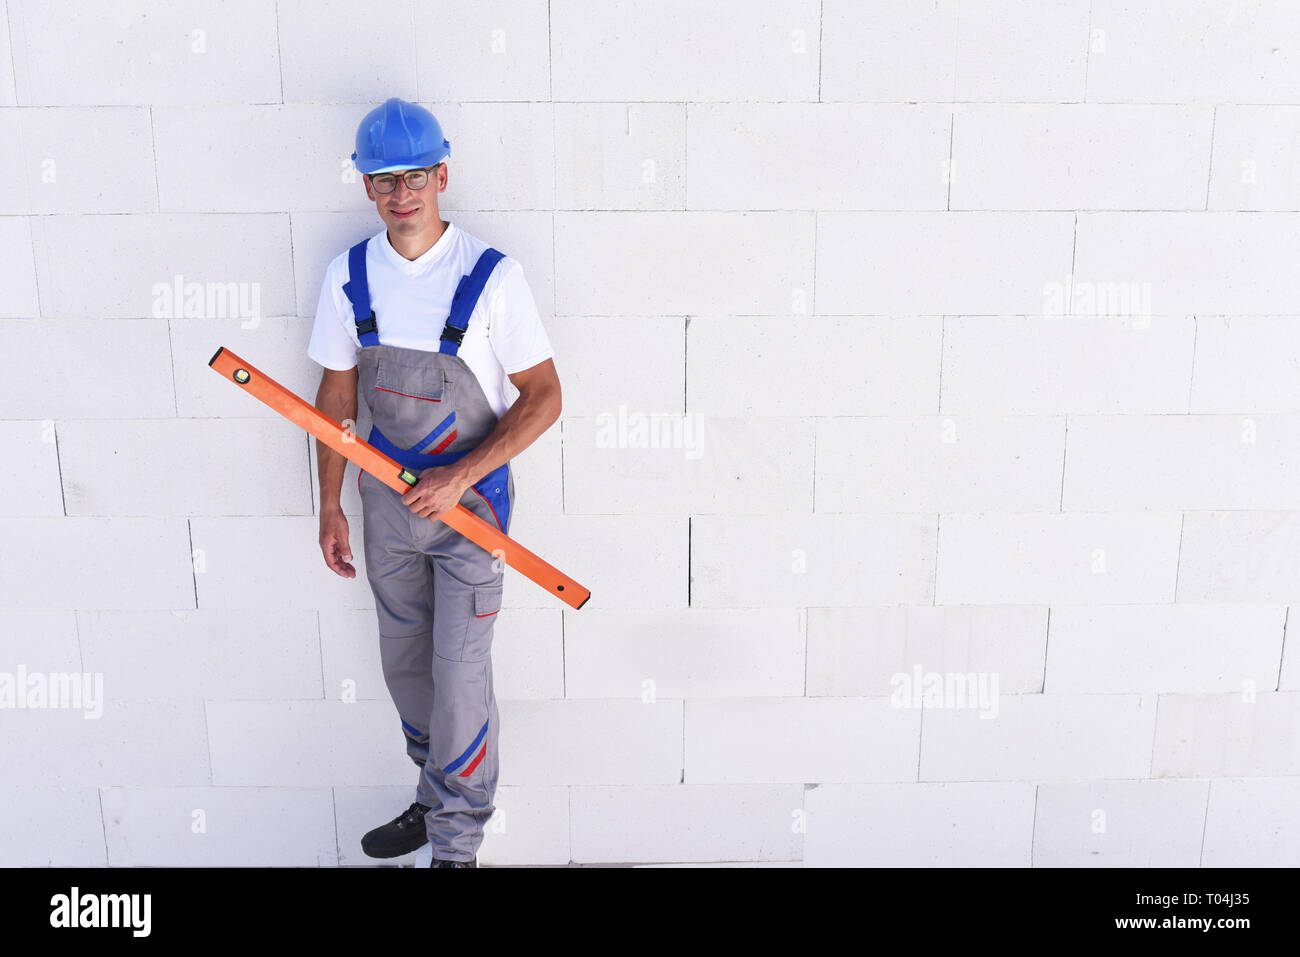 Professione lavoratore edile - lavorare su un sito di costruzione la costruzione di una casa residenziale Foto Stock